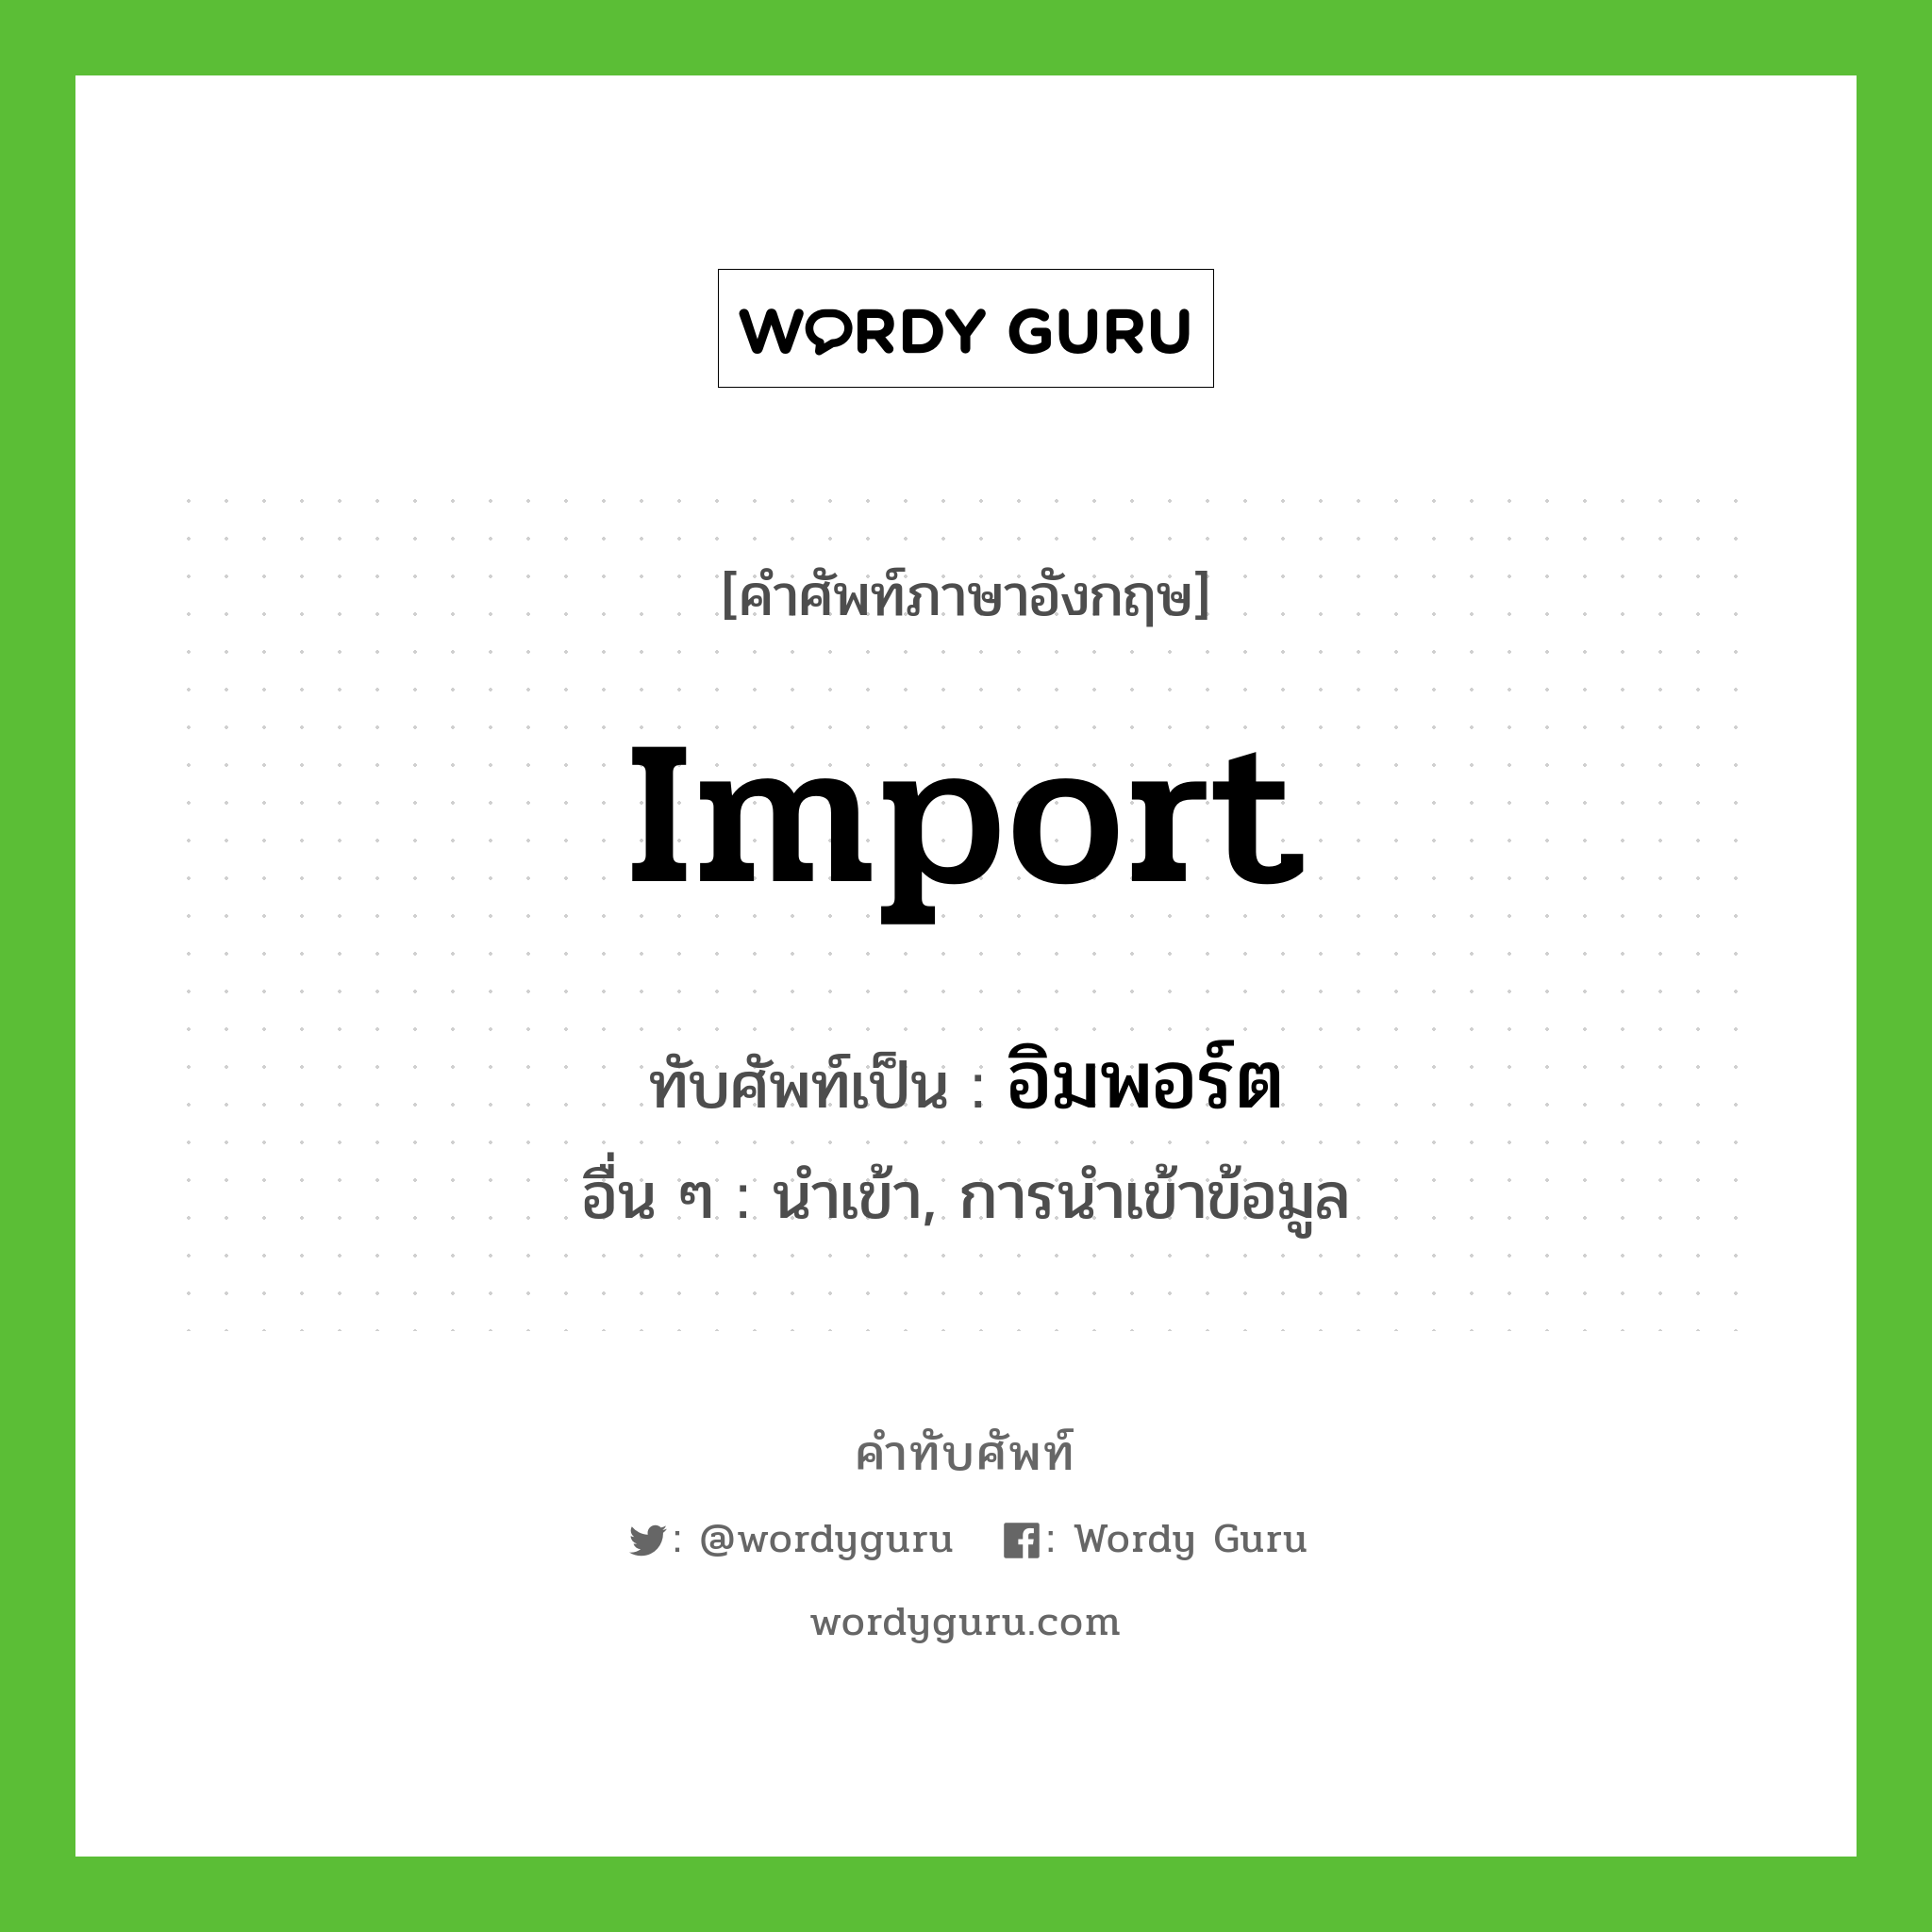 Import เขียนเป็นคำไทยว่าอะไร?, คำศัพท์ภาษาอังกฤษ Import ทับศัพท์เป็น อิมพอร์ต อื่น ๆ นำเข้า, การนำเข้าข้อมูล